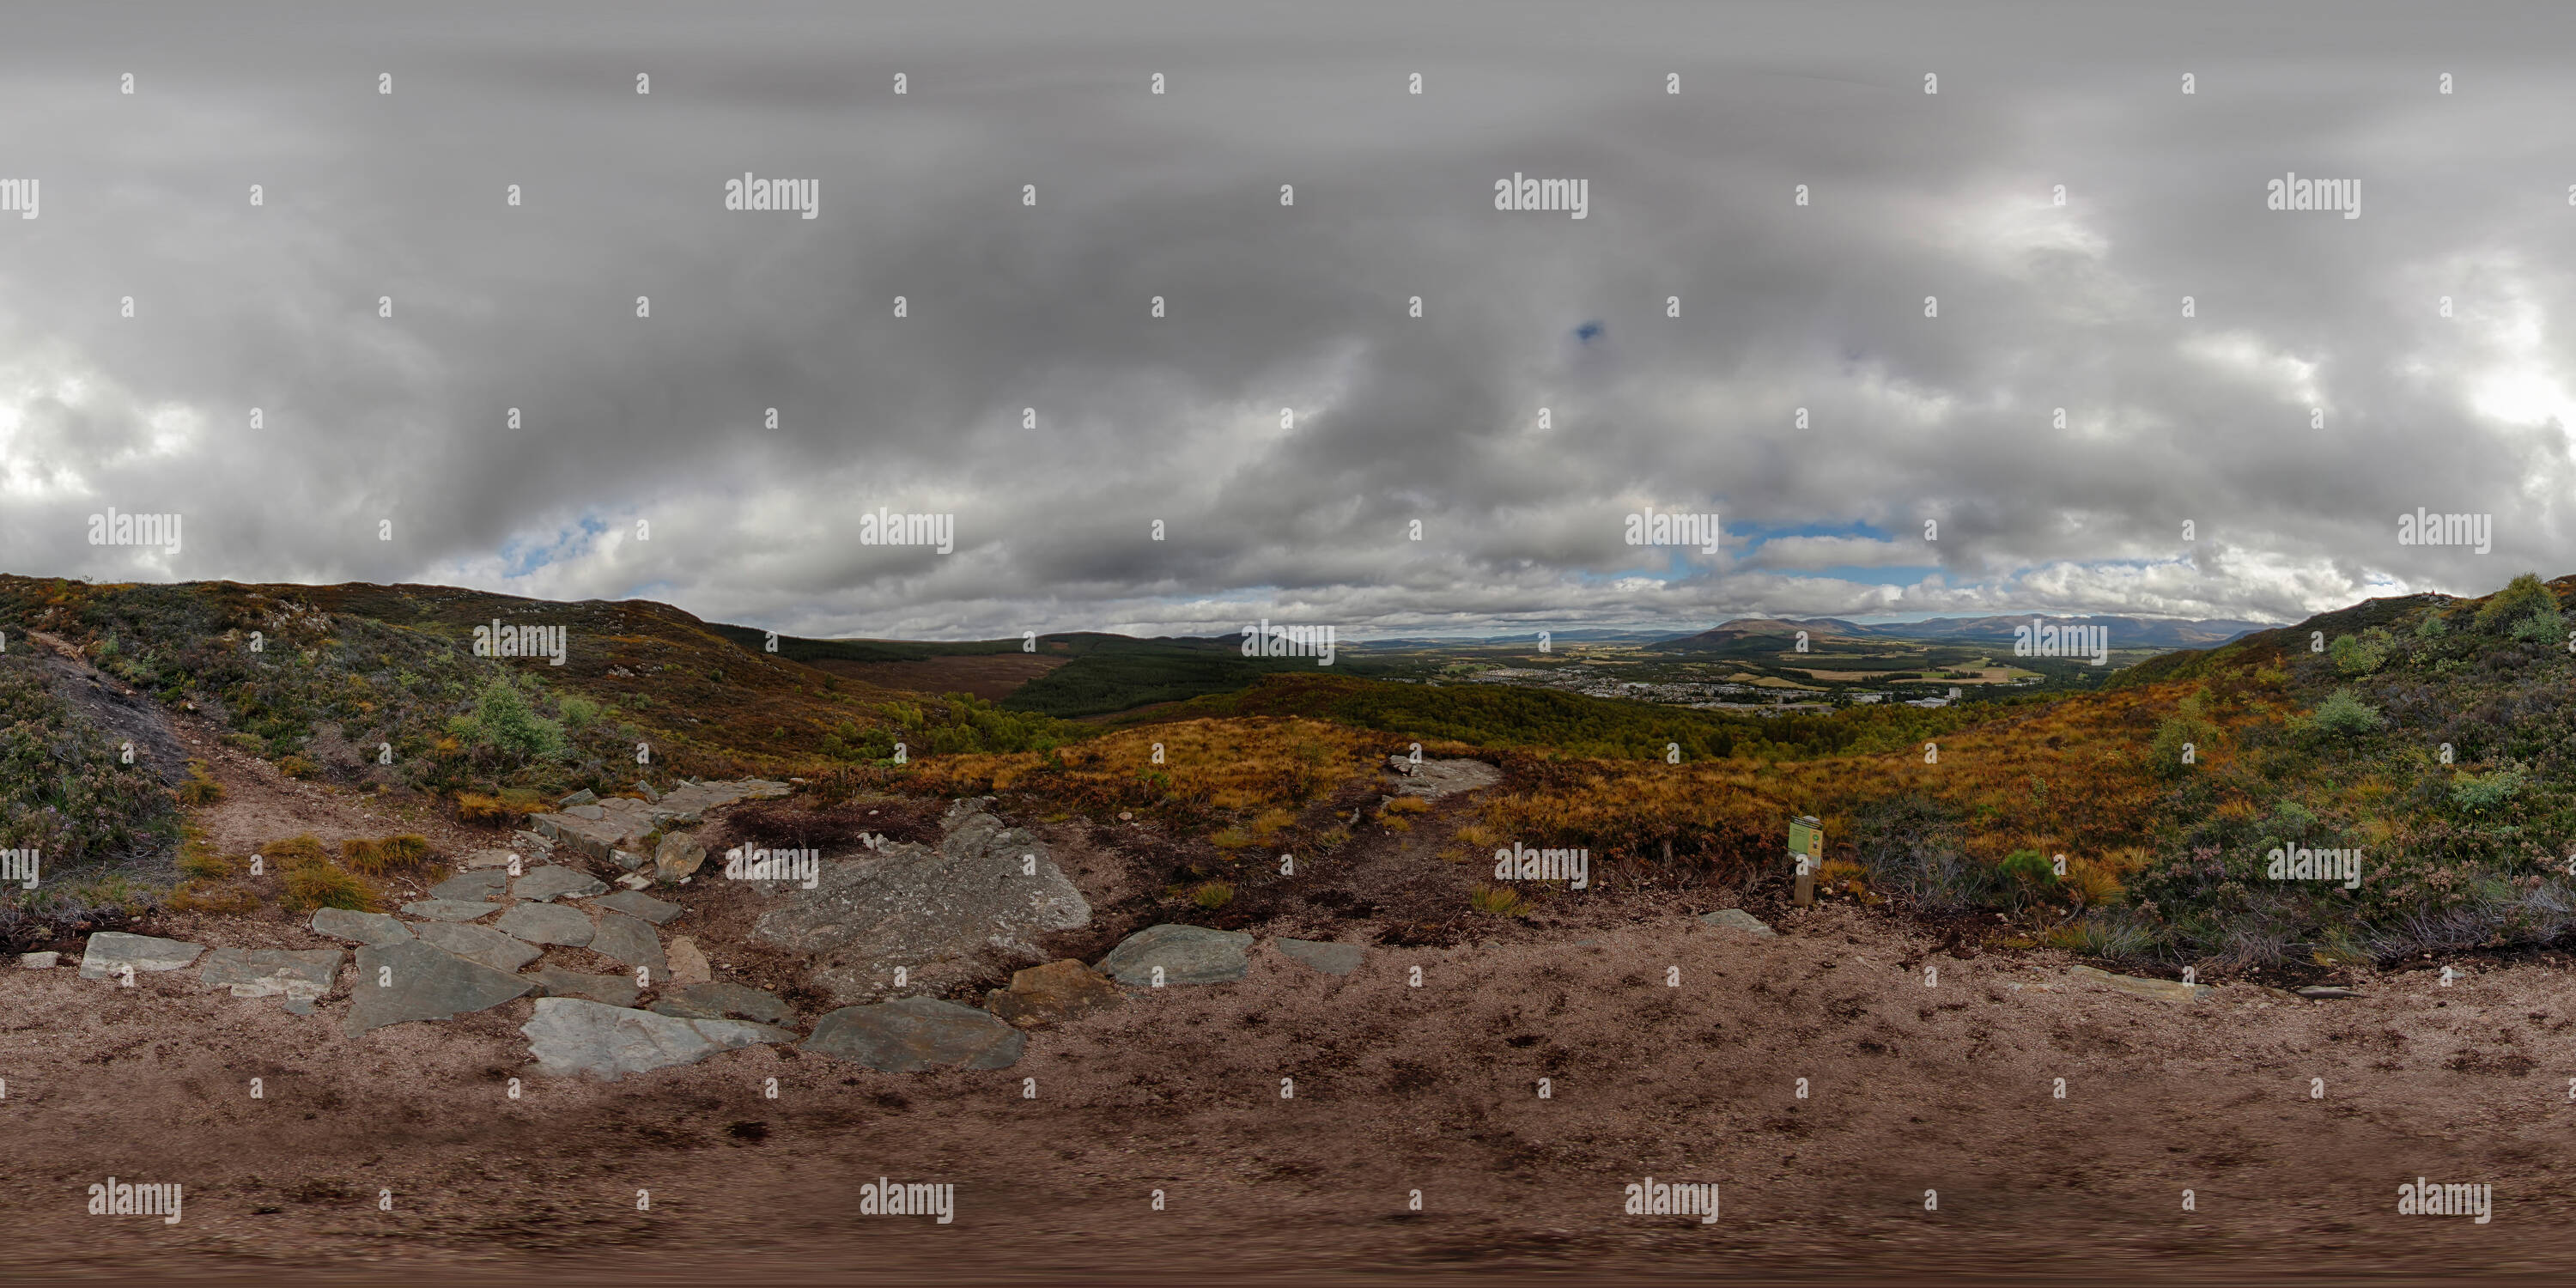 360 degree panoramic view of Scotland - Craigellachie - 01